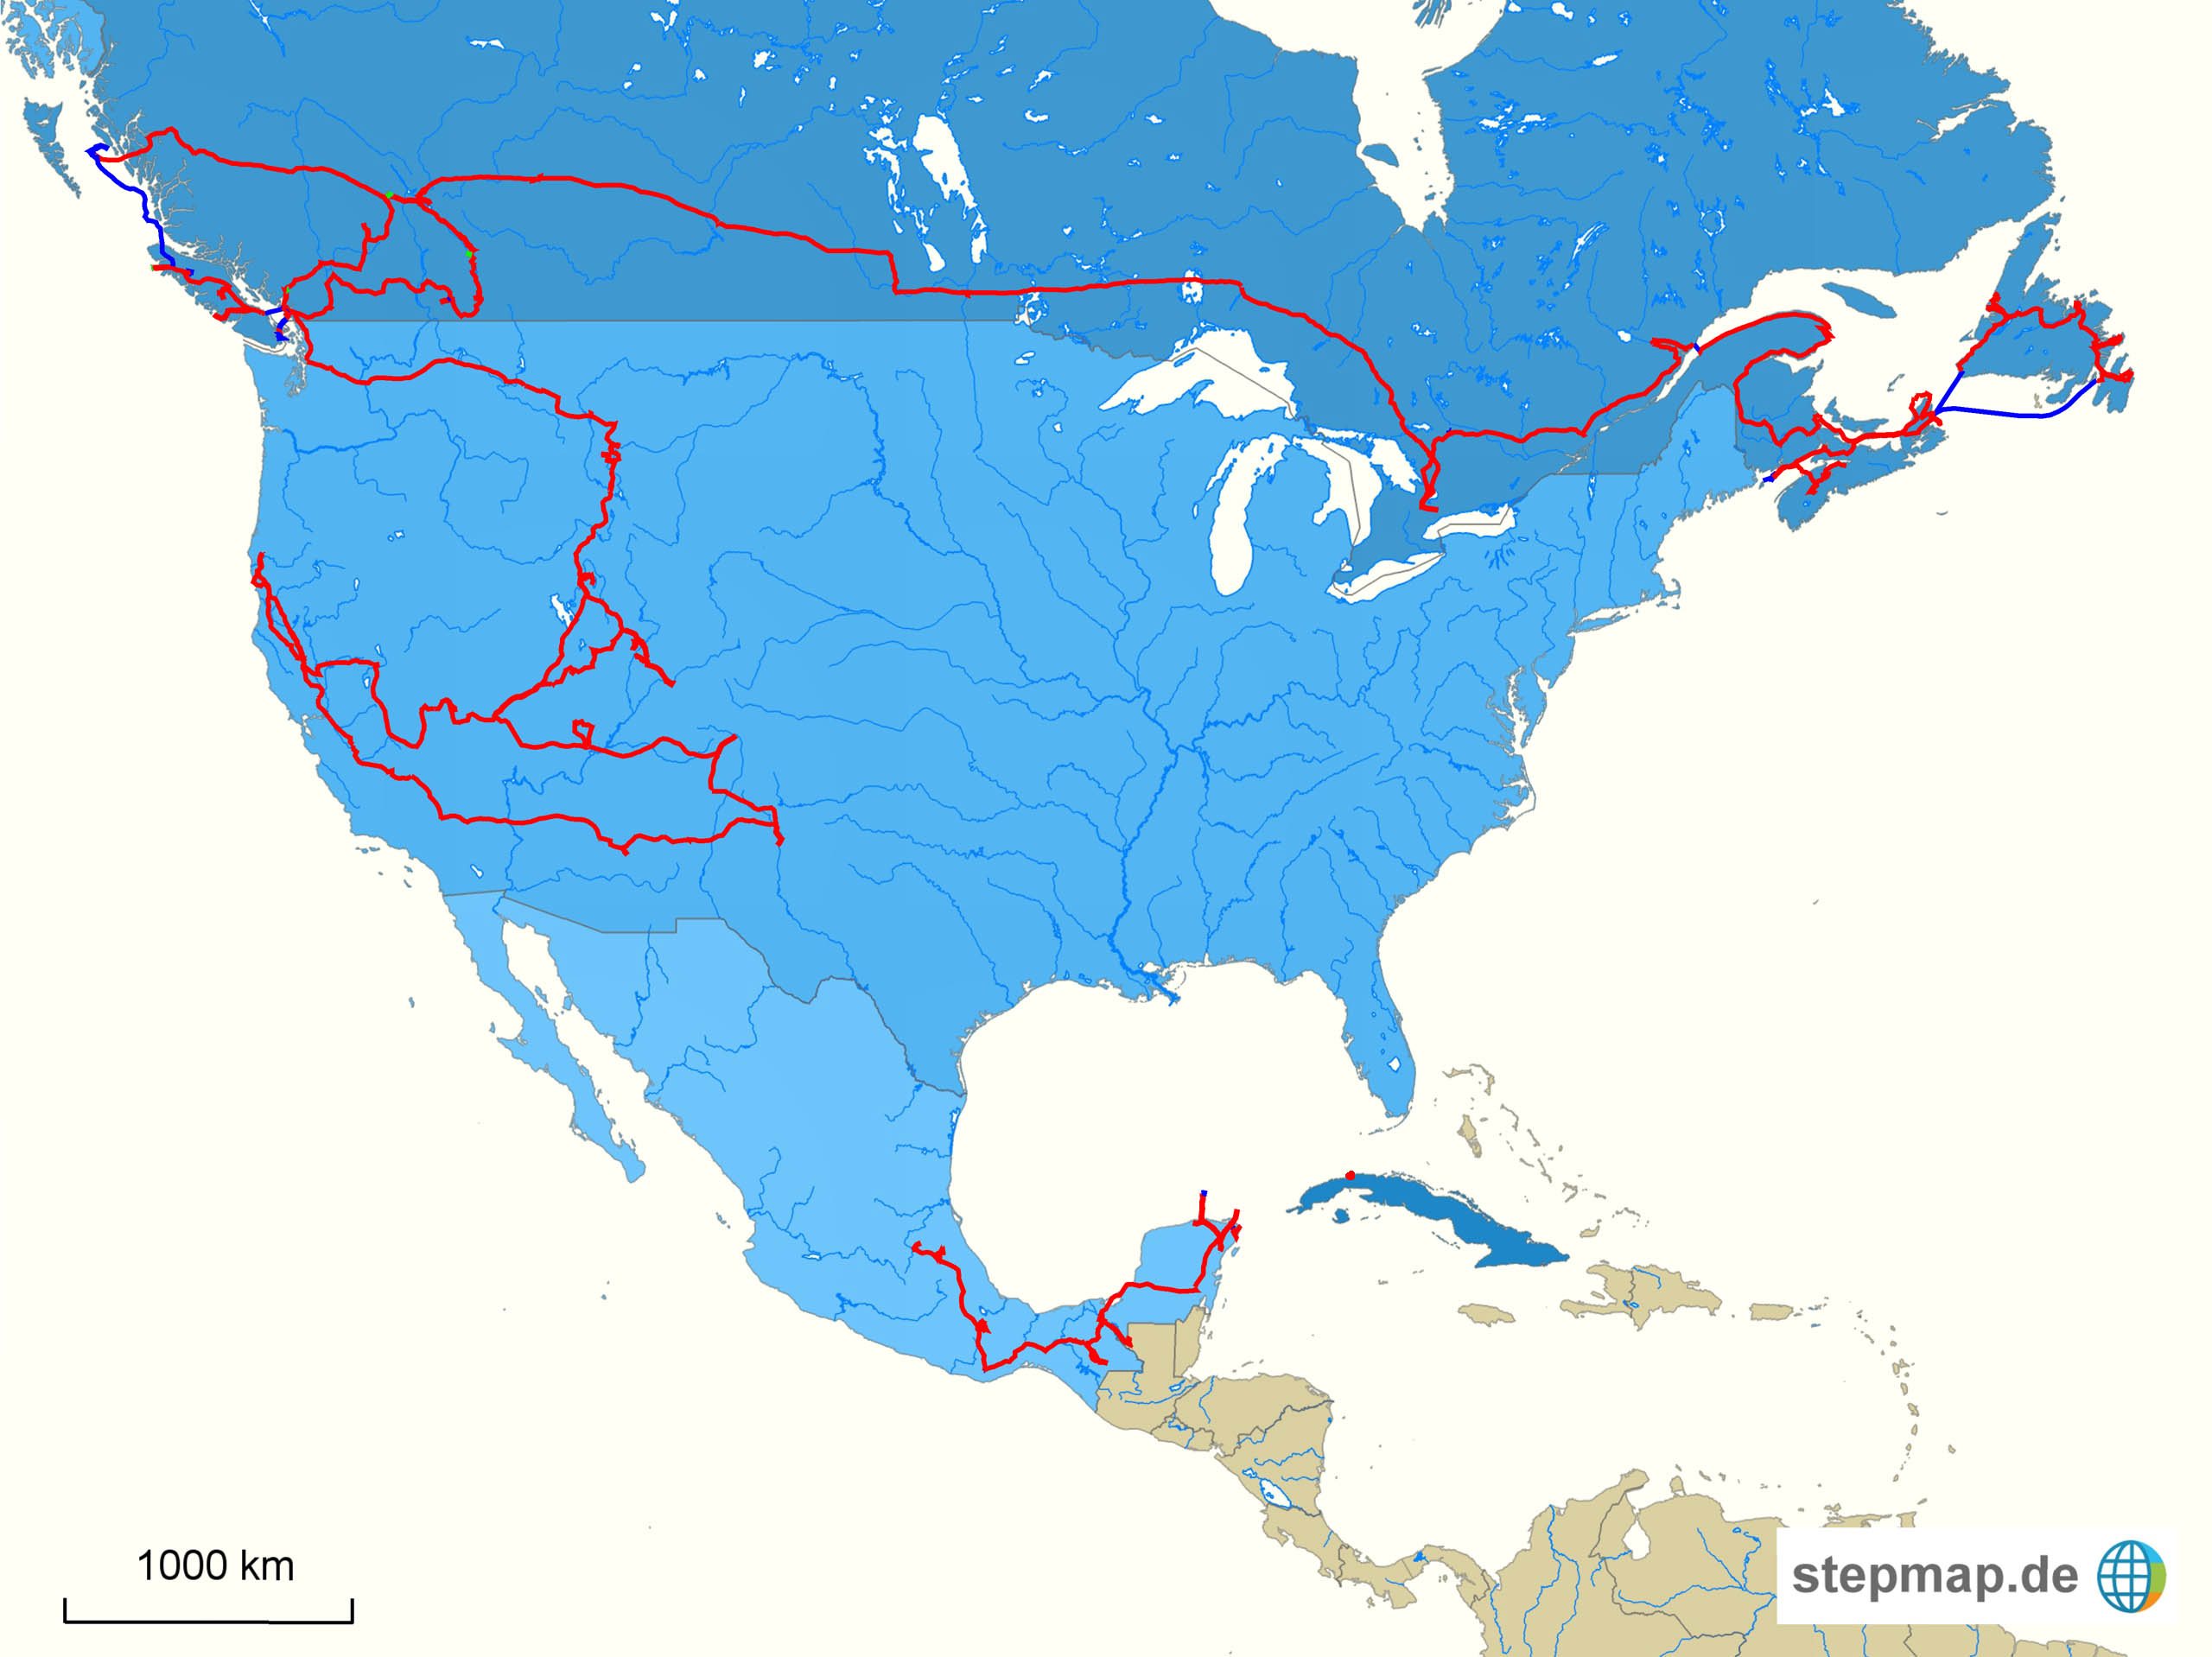 Karte Nordamerika